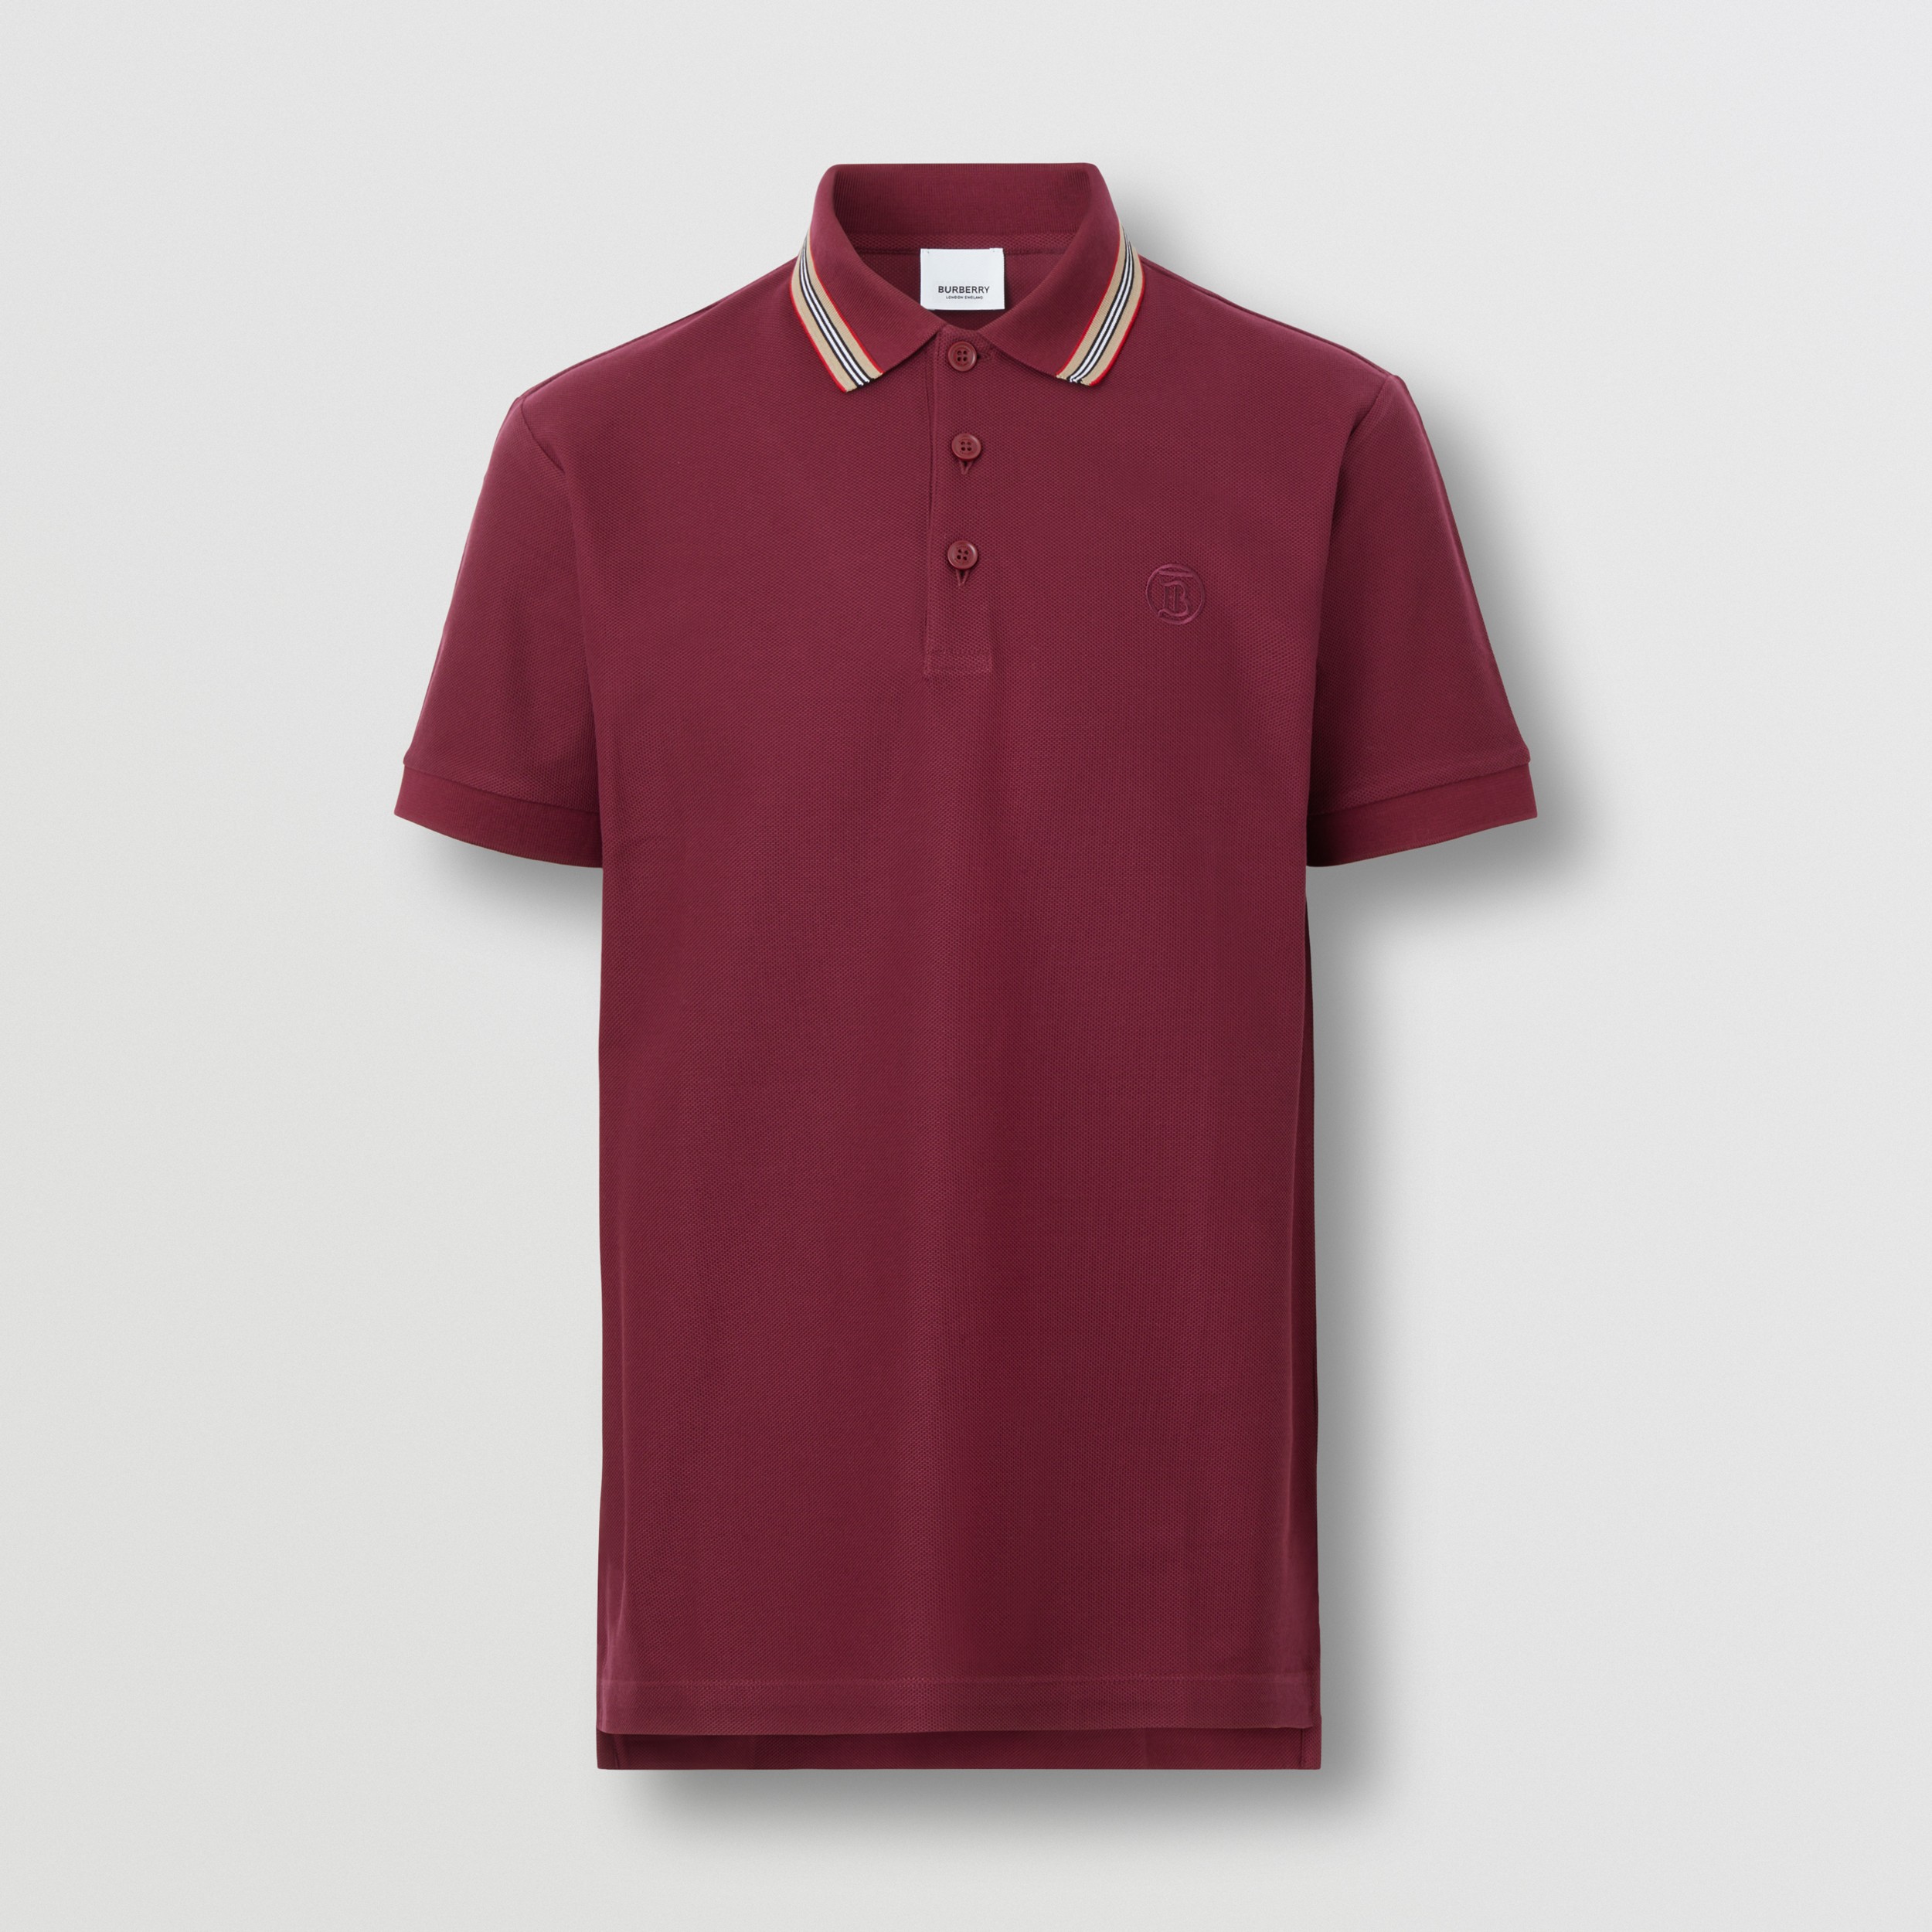 Baumwollpiqué-Poloshirt mit gestreiftem Kragen (Granatrot) - Herren | Burberry® - 4